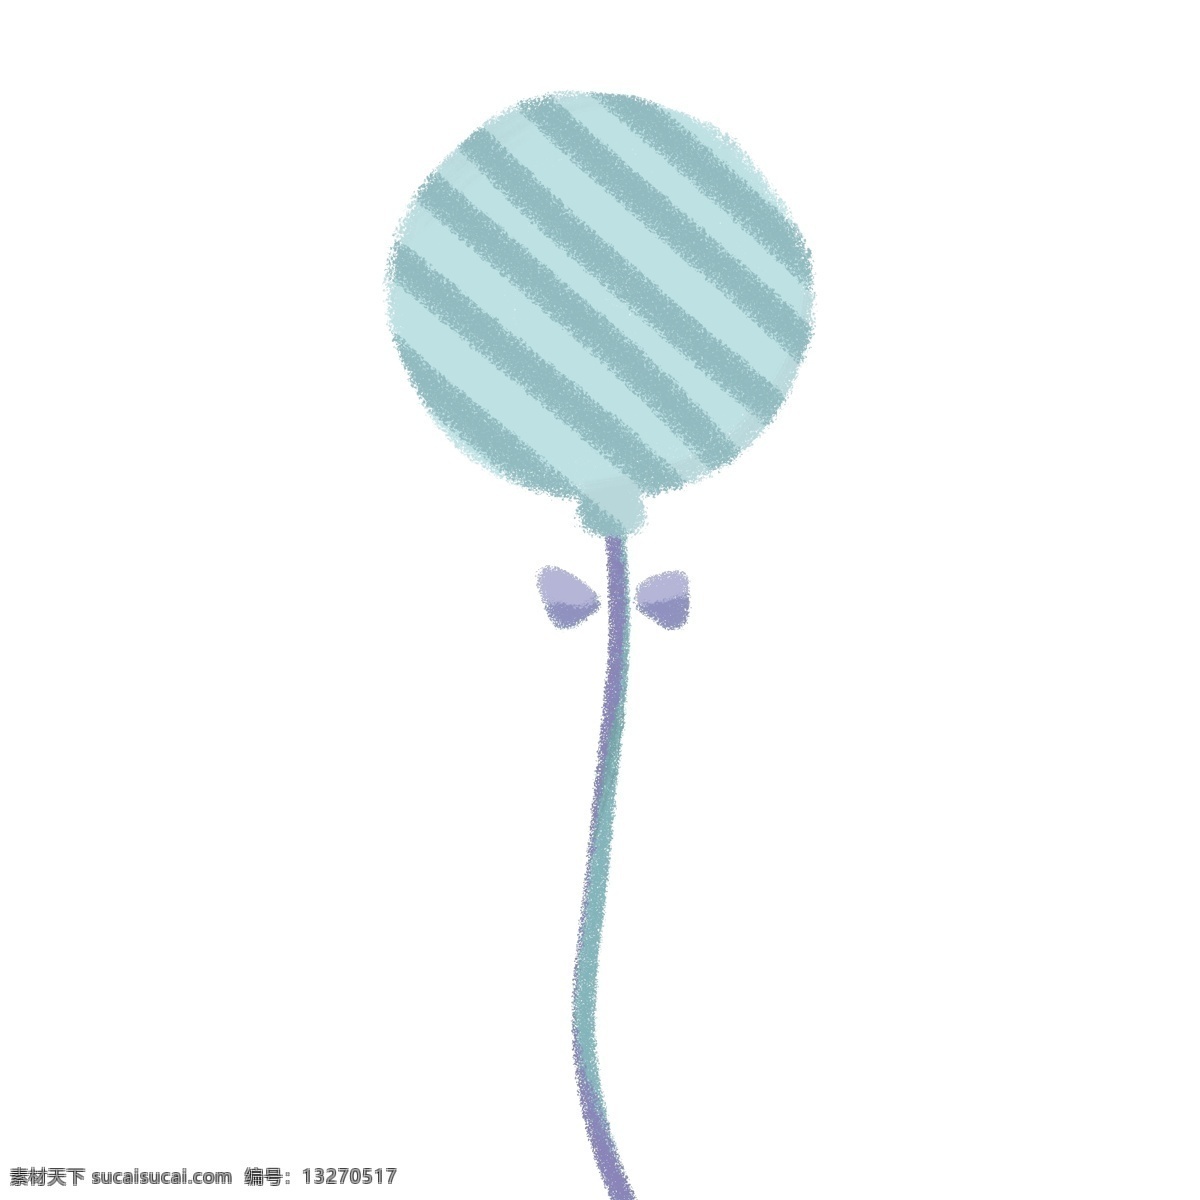 浅蓝色 条纹 气球 简单 蝴蝶结 夏日 儿童